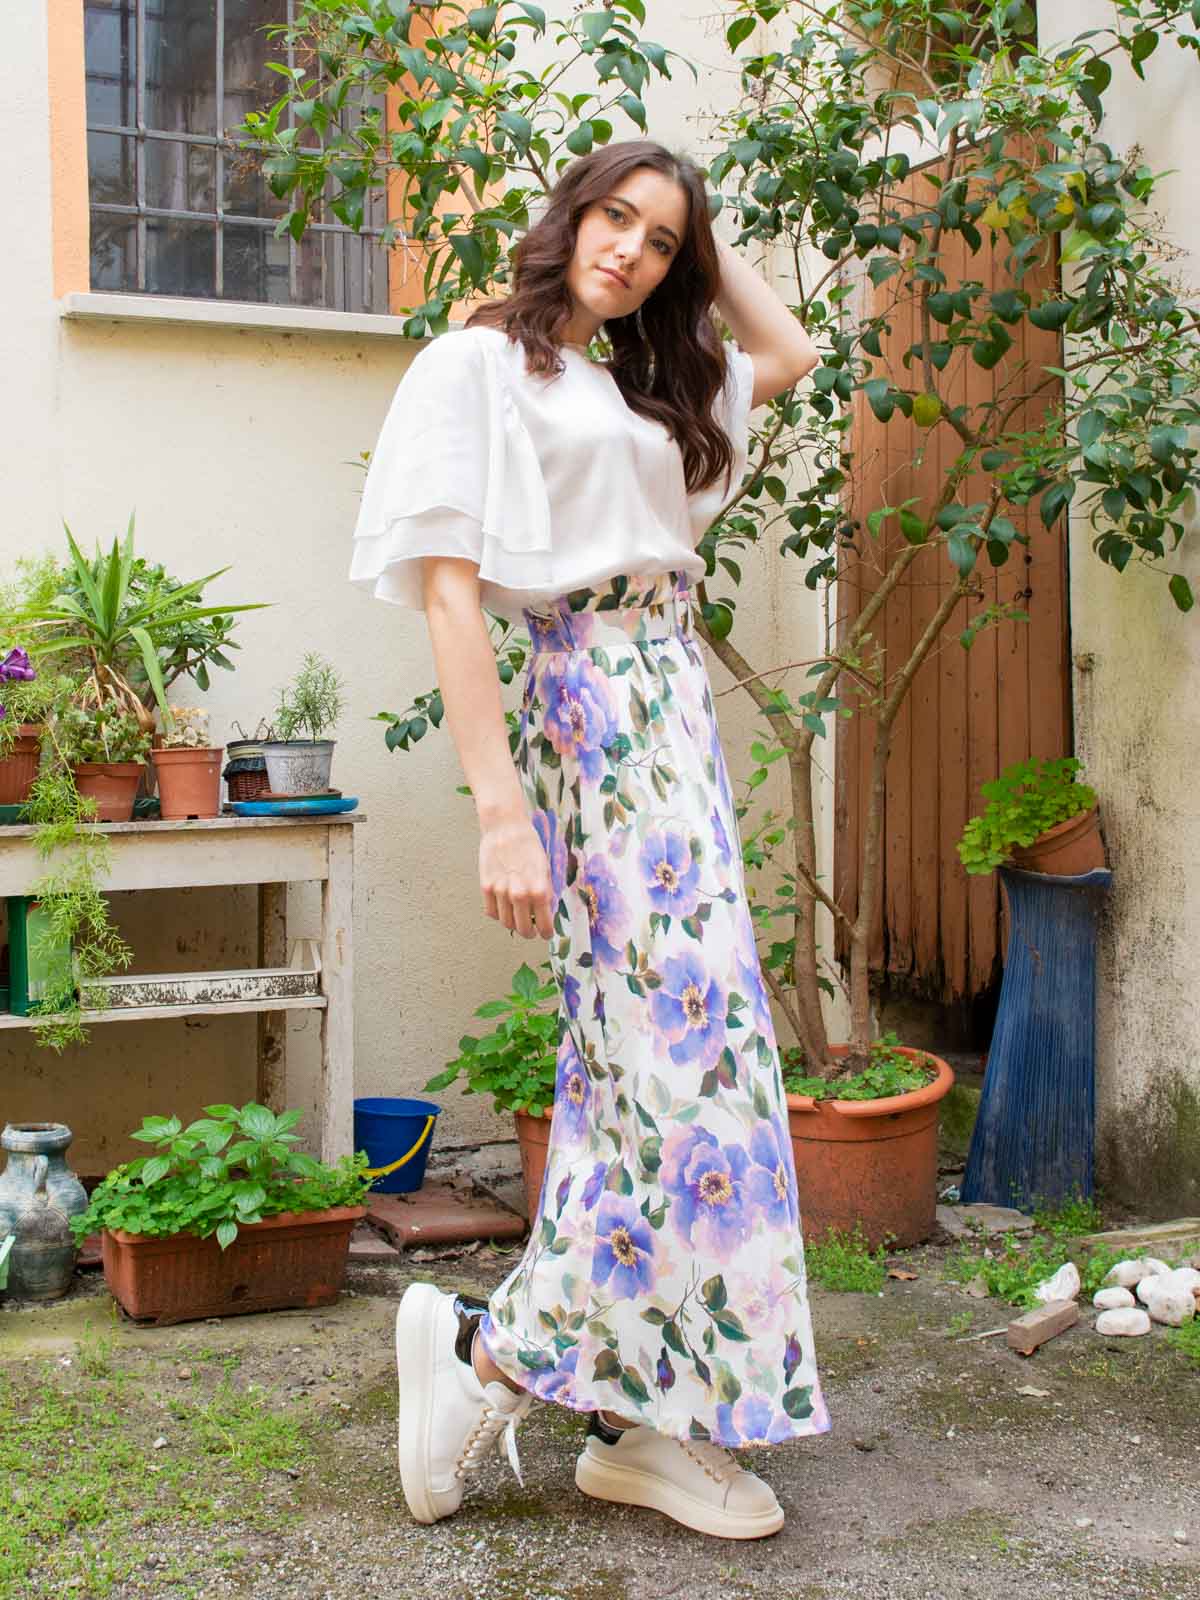 Floral patterned skirt